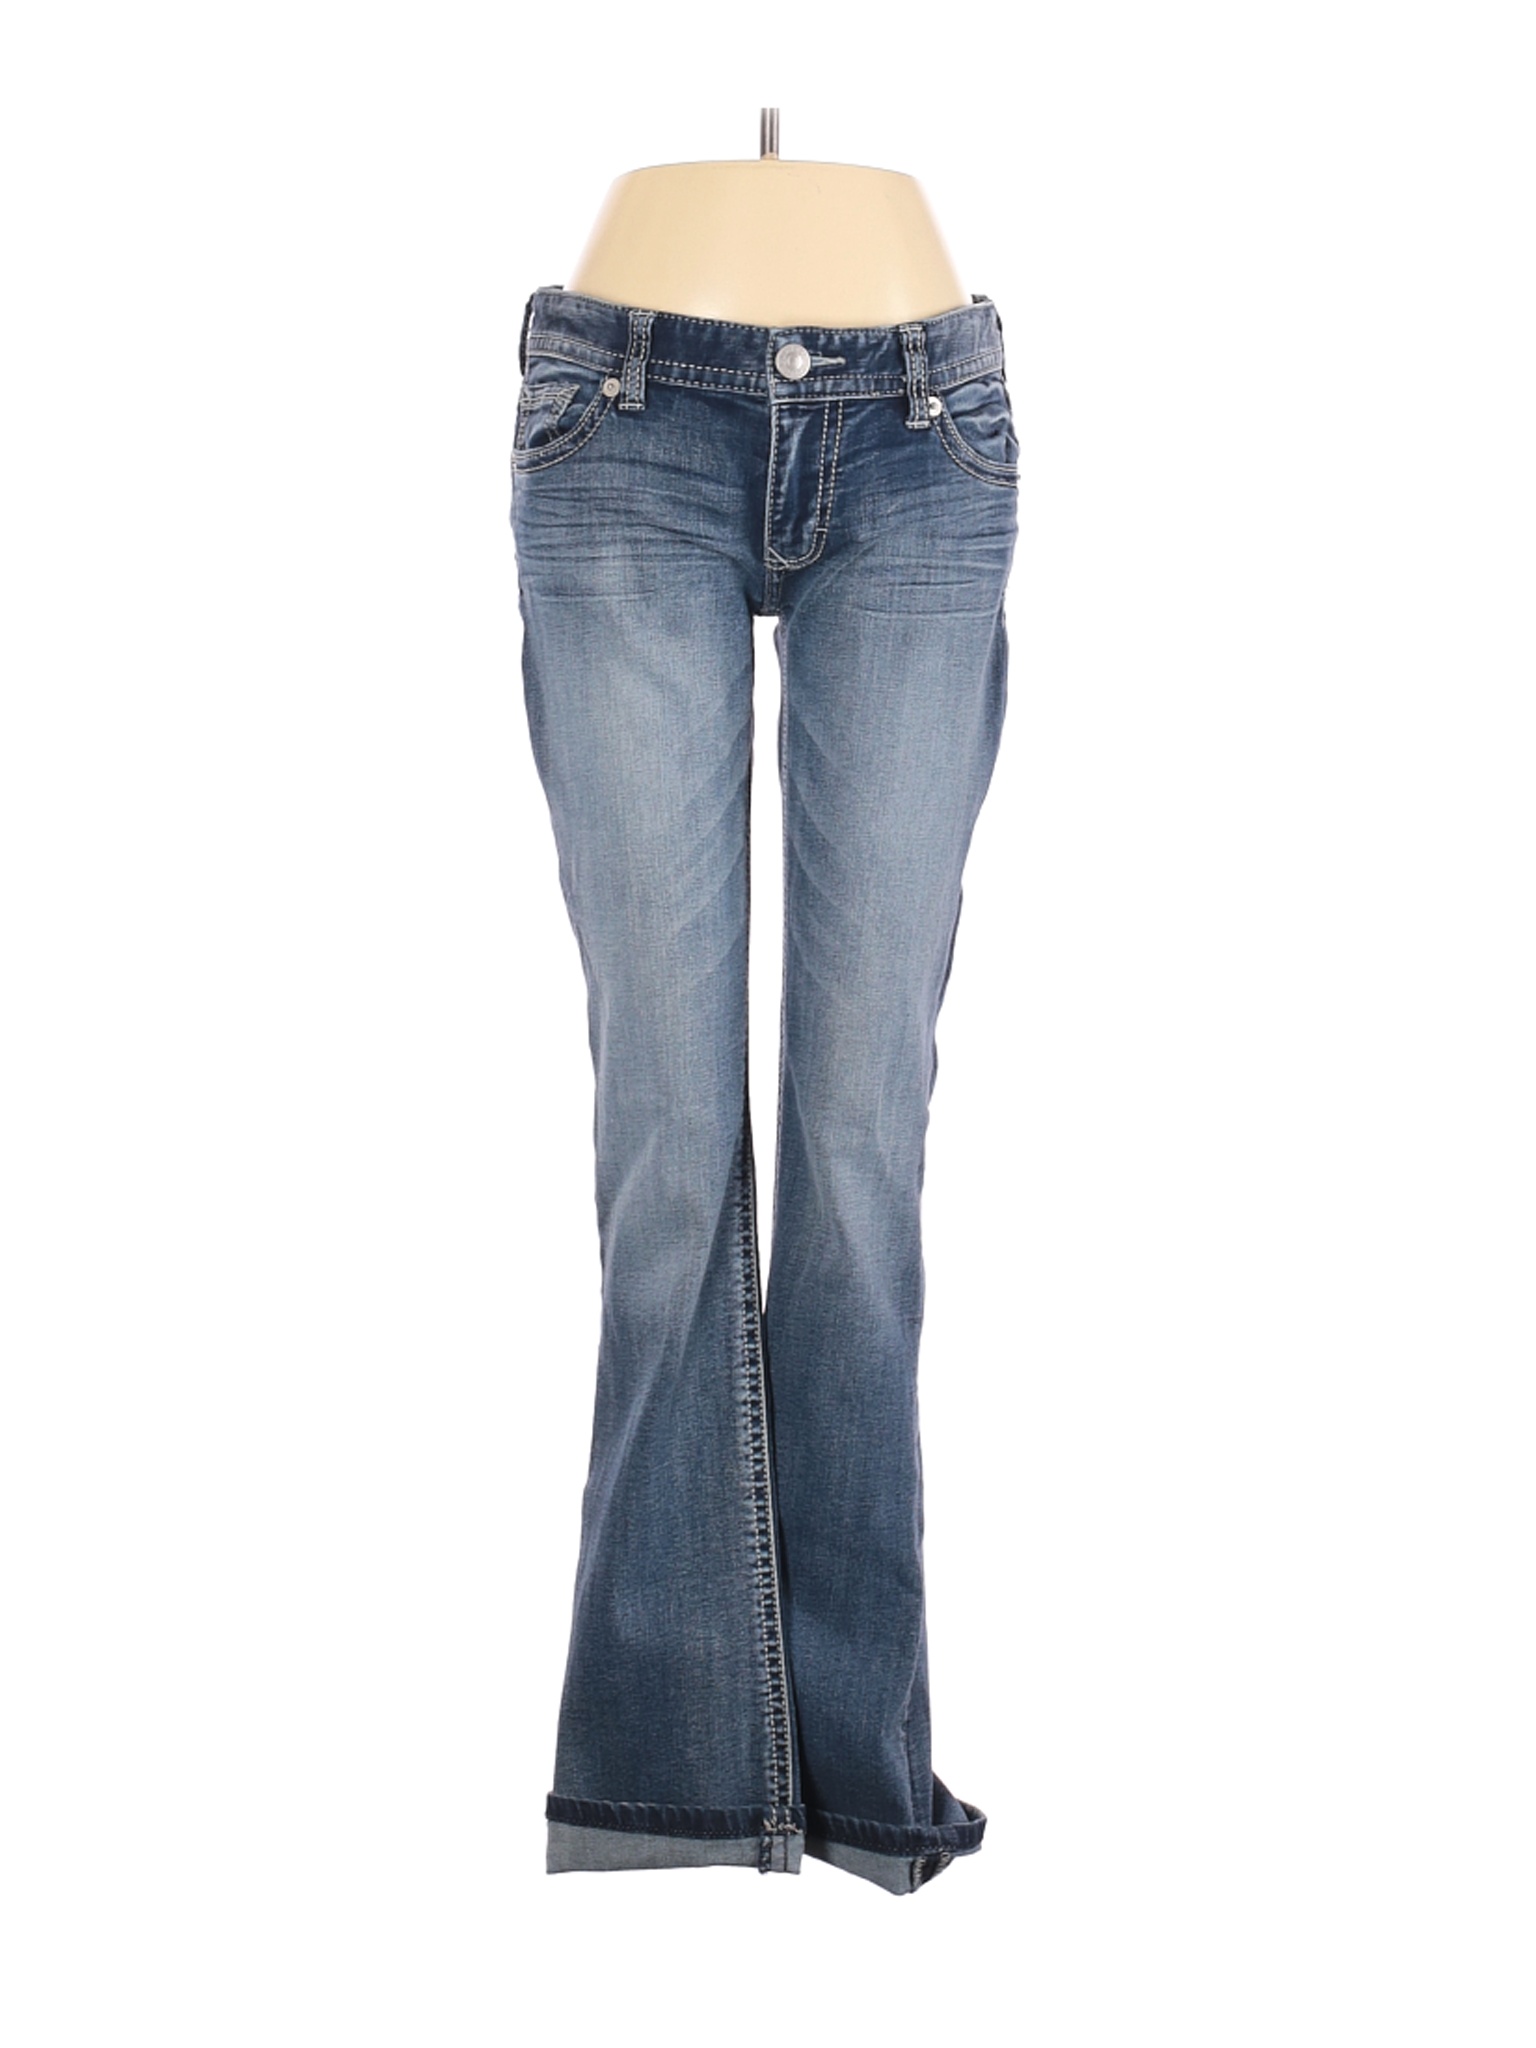 Express Jeans Women Blue Jeans 6 | eBay